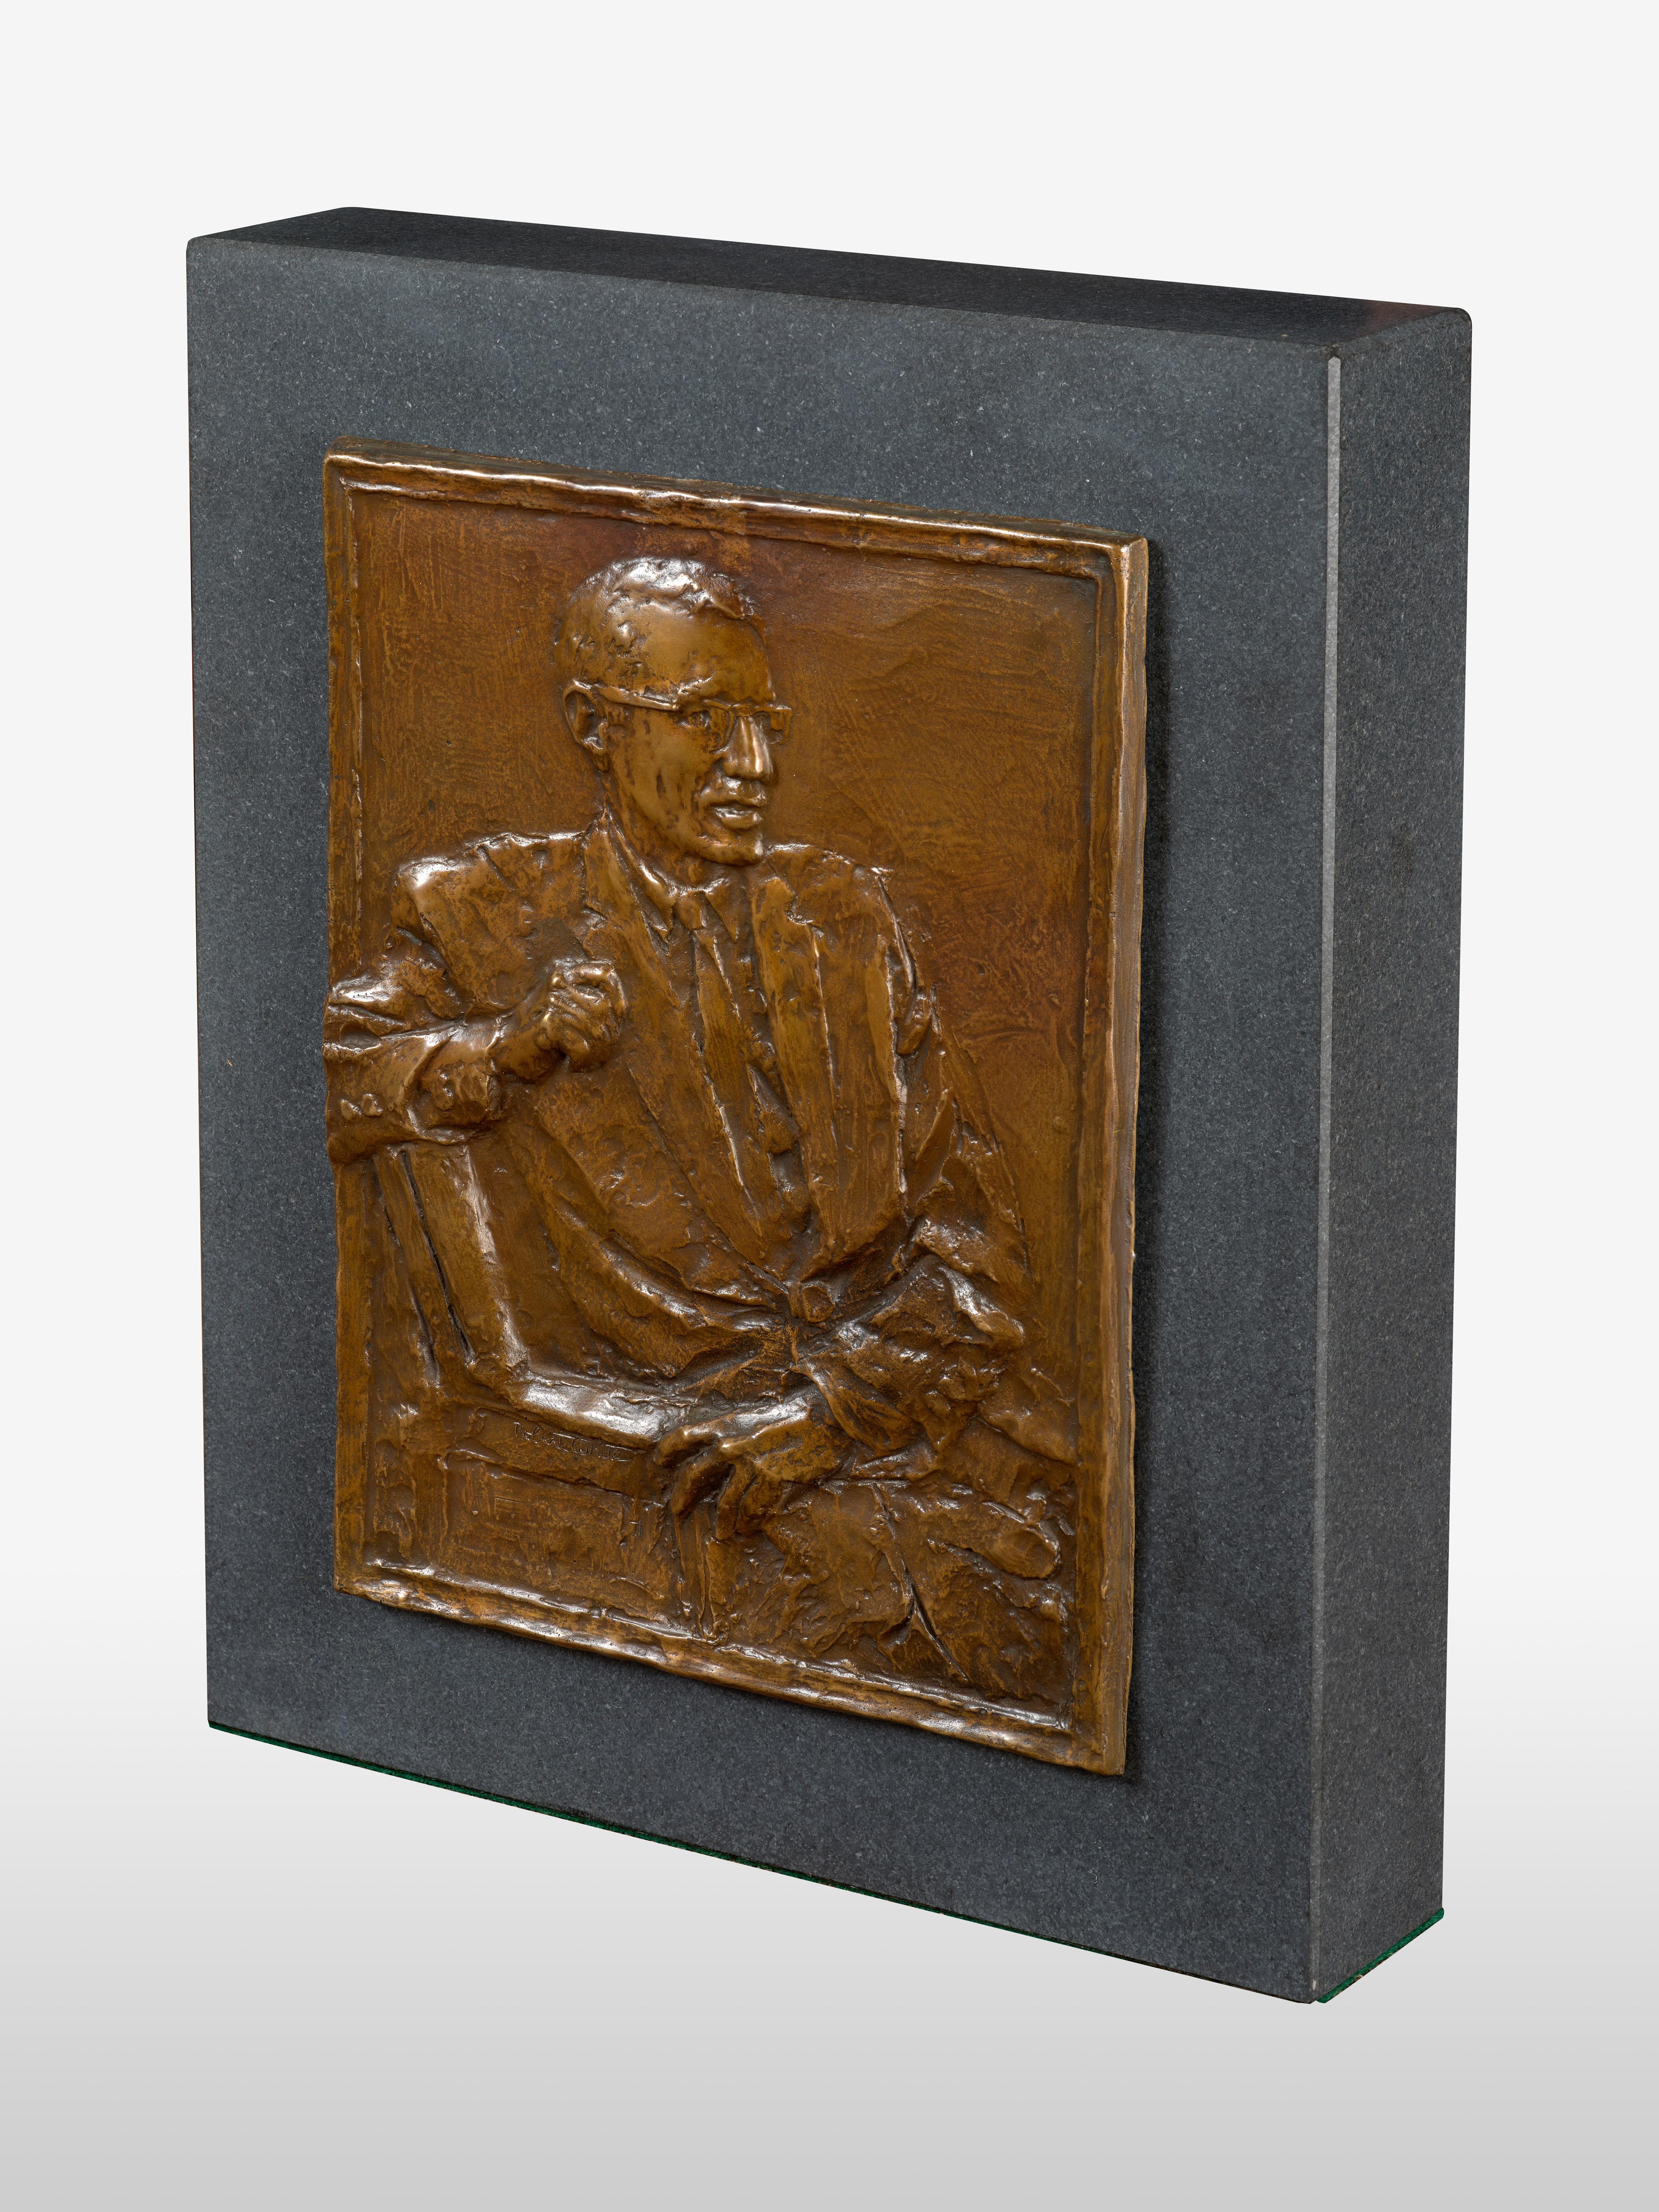 Portrait of Arthur Miller - Sculpture by Robert Winthrop White